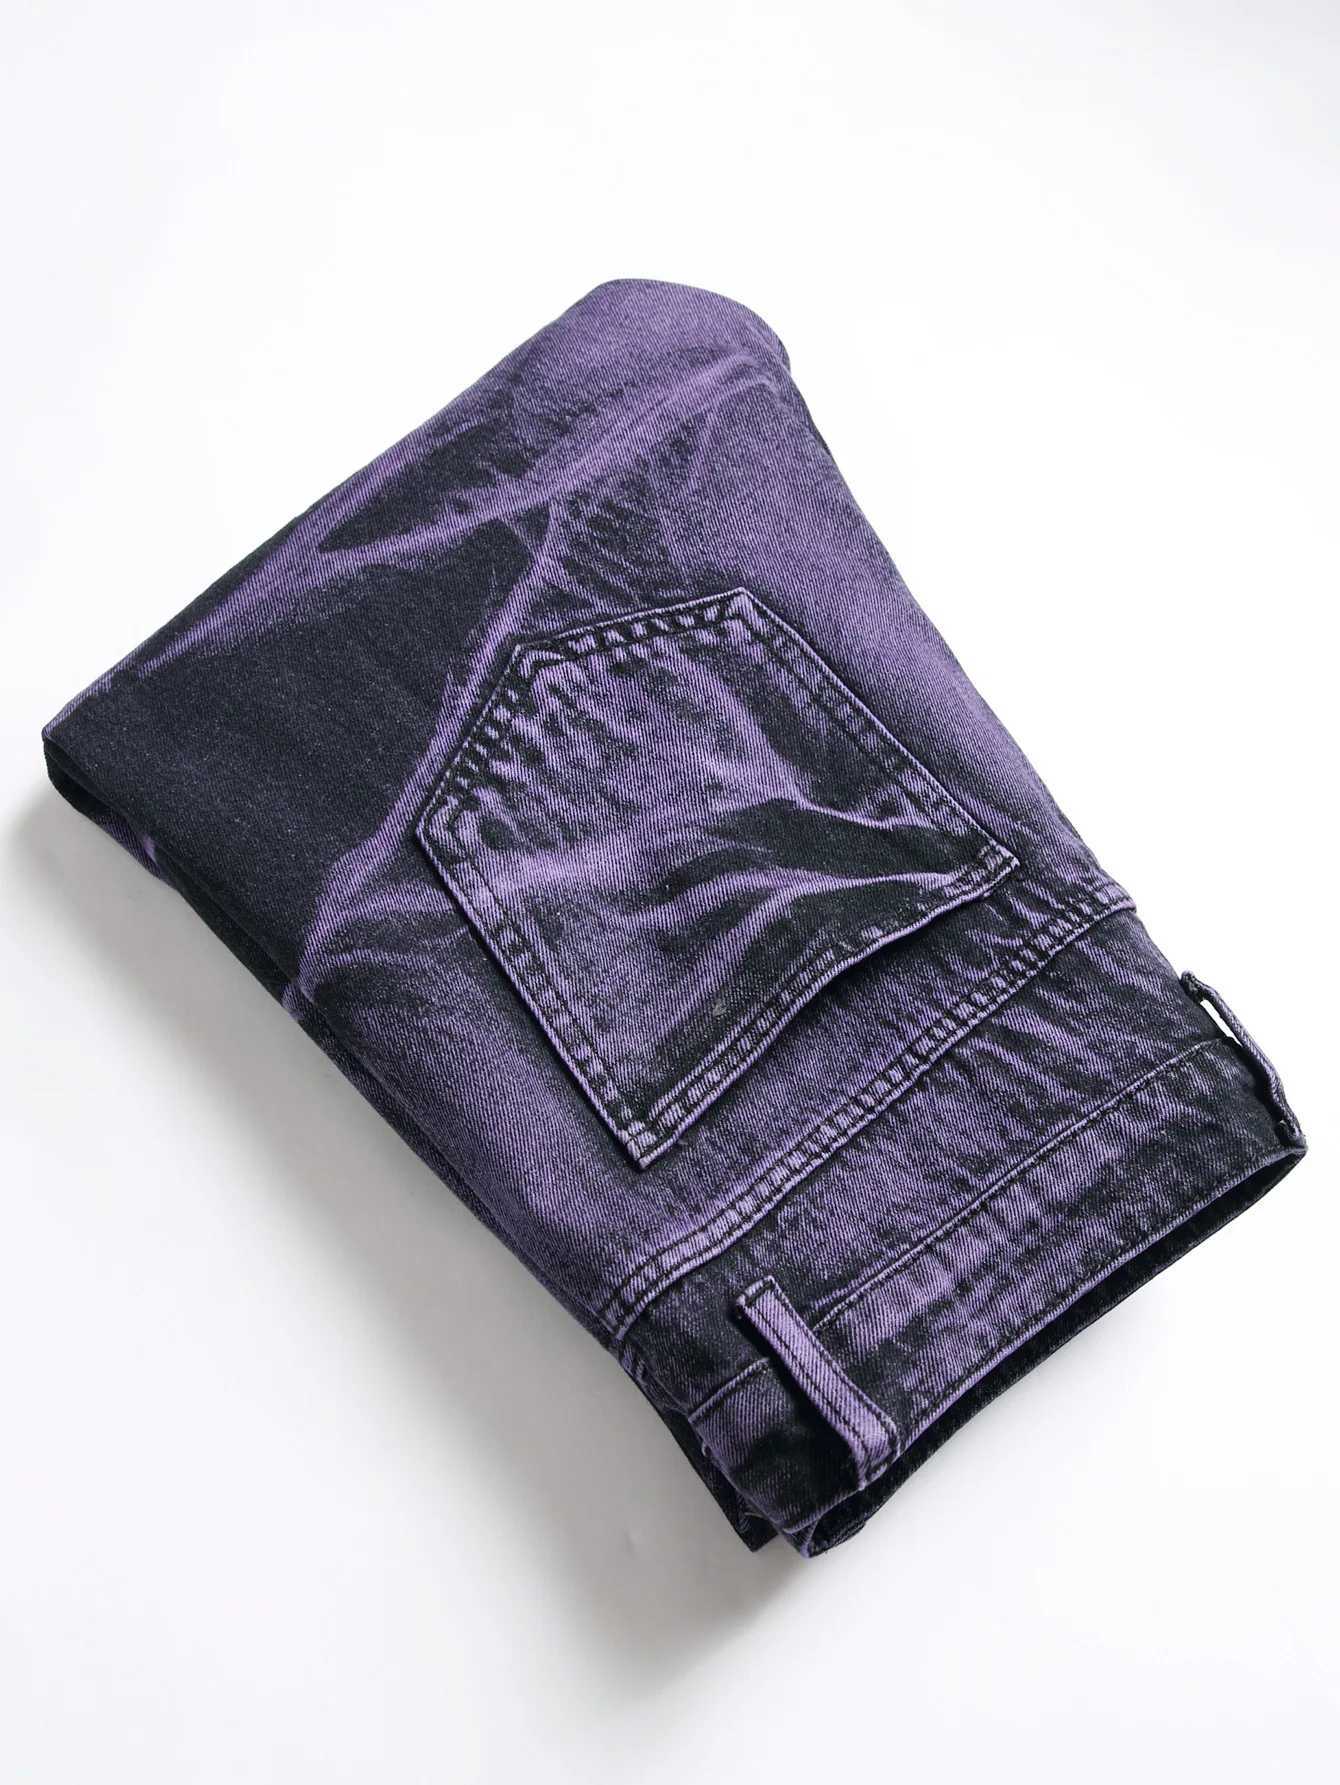 Jeans pour hommes Jeans déchirés pour hommes Pantalon en denim serré saisonnier Personnalisé Violet Noir Jeans droits Mode Pantalon pour jeunes J240328